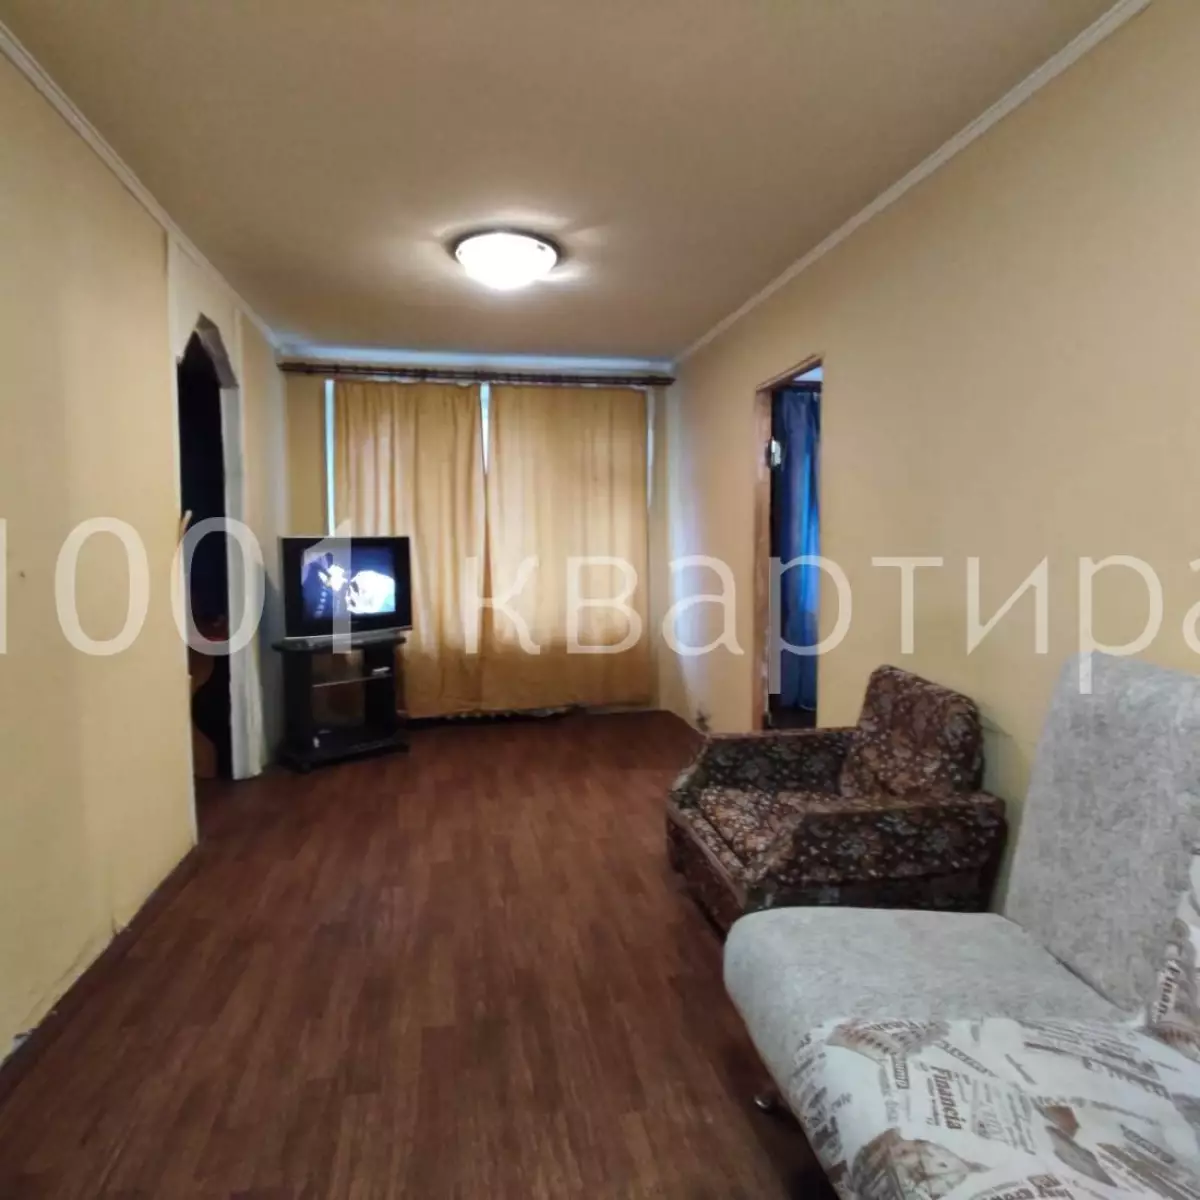 Вариант #131661 для аренды посуточно в Москве Донелайтиса, д.36 на 5 гостей - фото 1